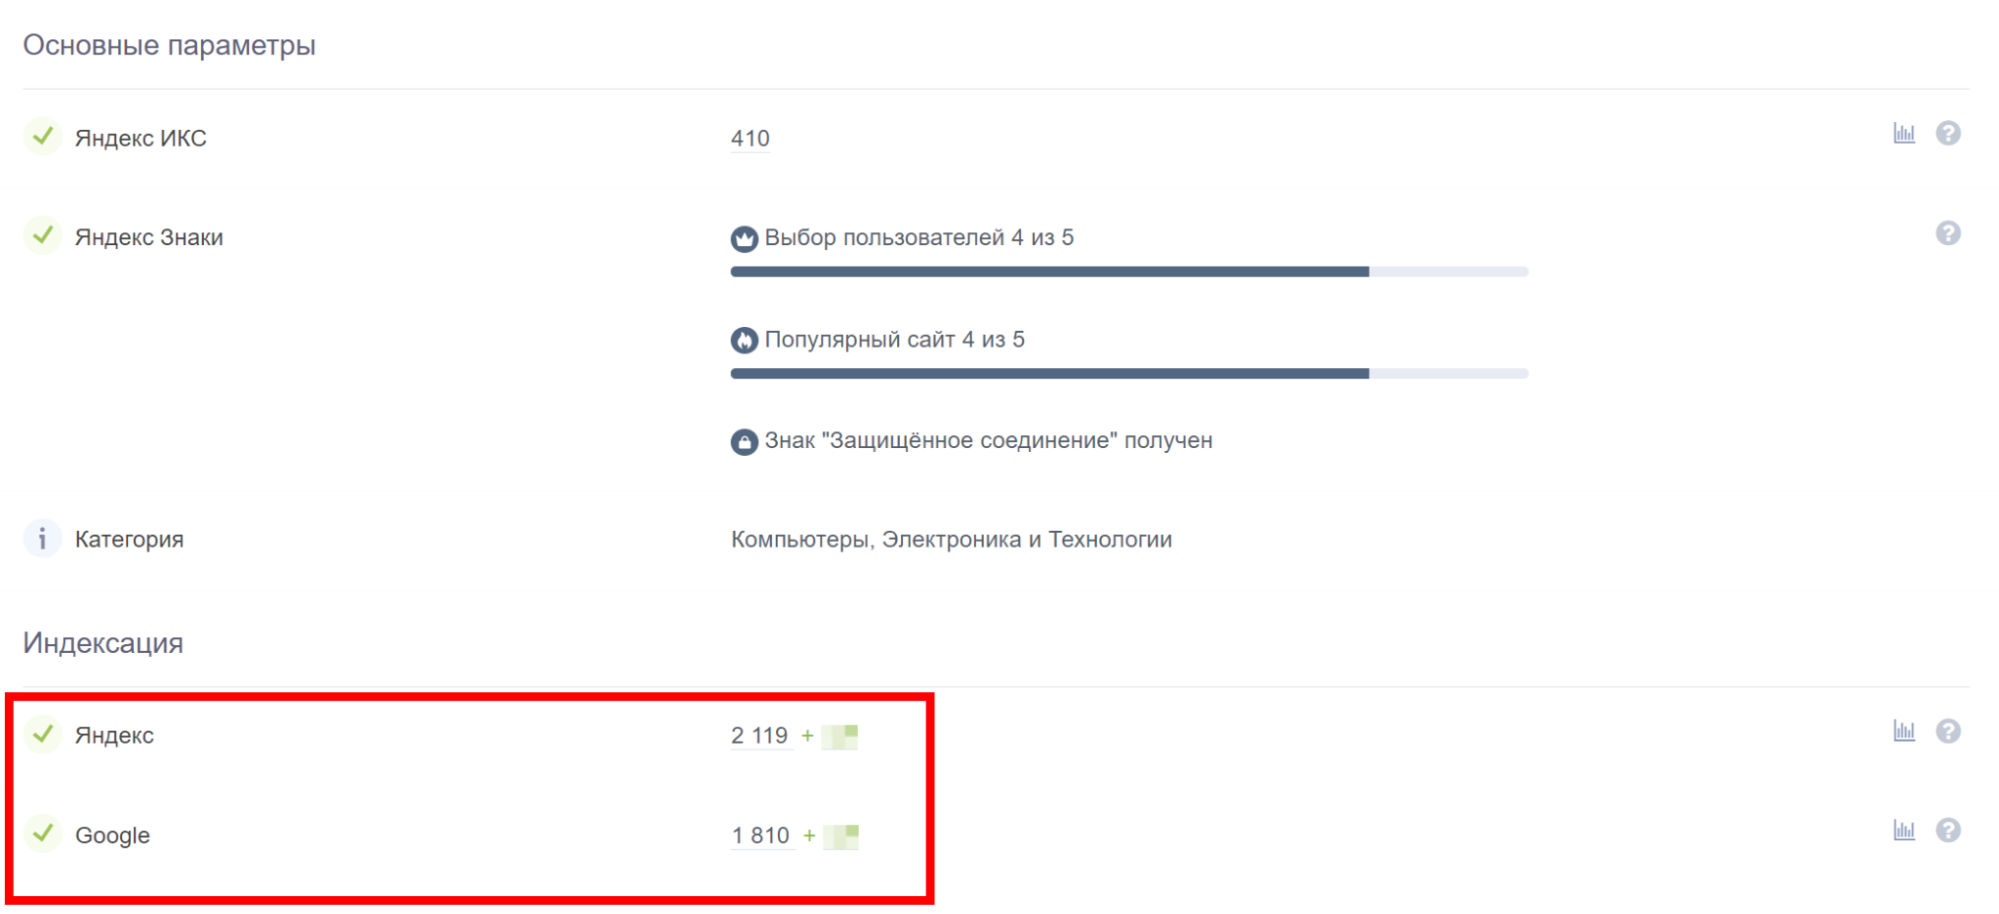 Кроме данных по страницам в индексе, в отчете есть информация об ИКС, наличии знаков «Яндекса»